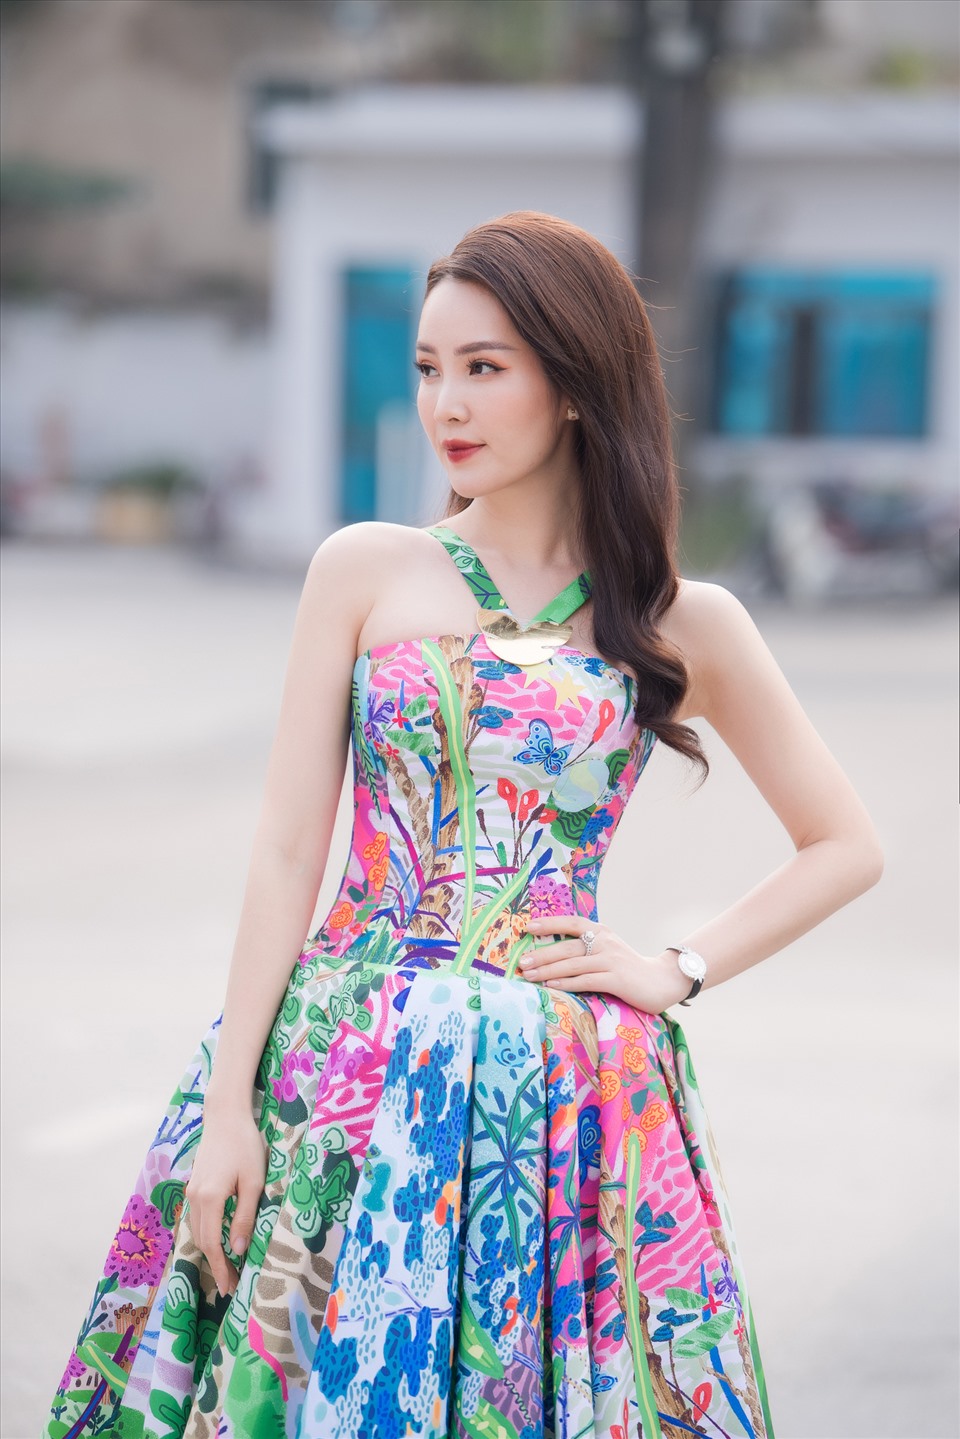 Á hậu Thuỵ Vân cũng là một trong những người đẹp bước ra từ Hoa hậu Việt Na có cuộc viên mãn nhất. Không chỉ thành công trong công việc cô còn có cuộc sống hạnh phúc cùng chồng và con trai. Ảnh: Vũ Toàn.